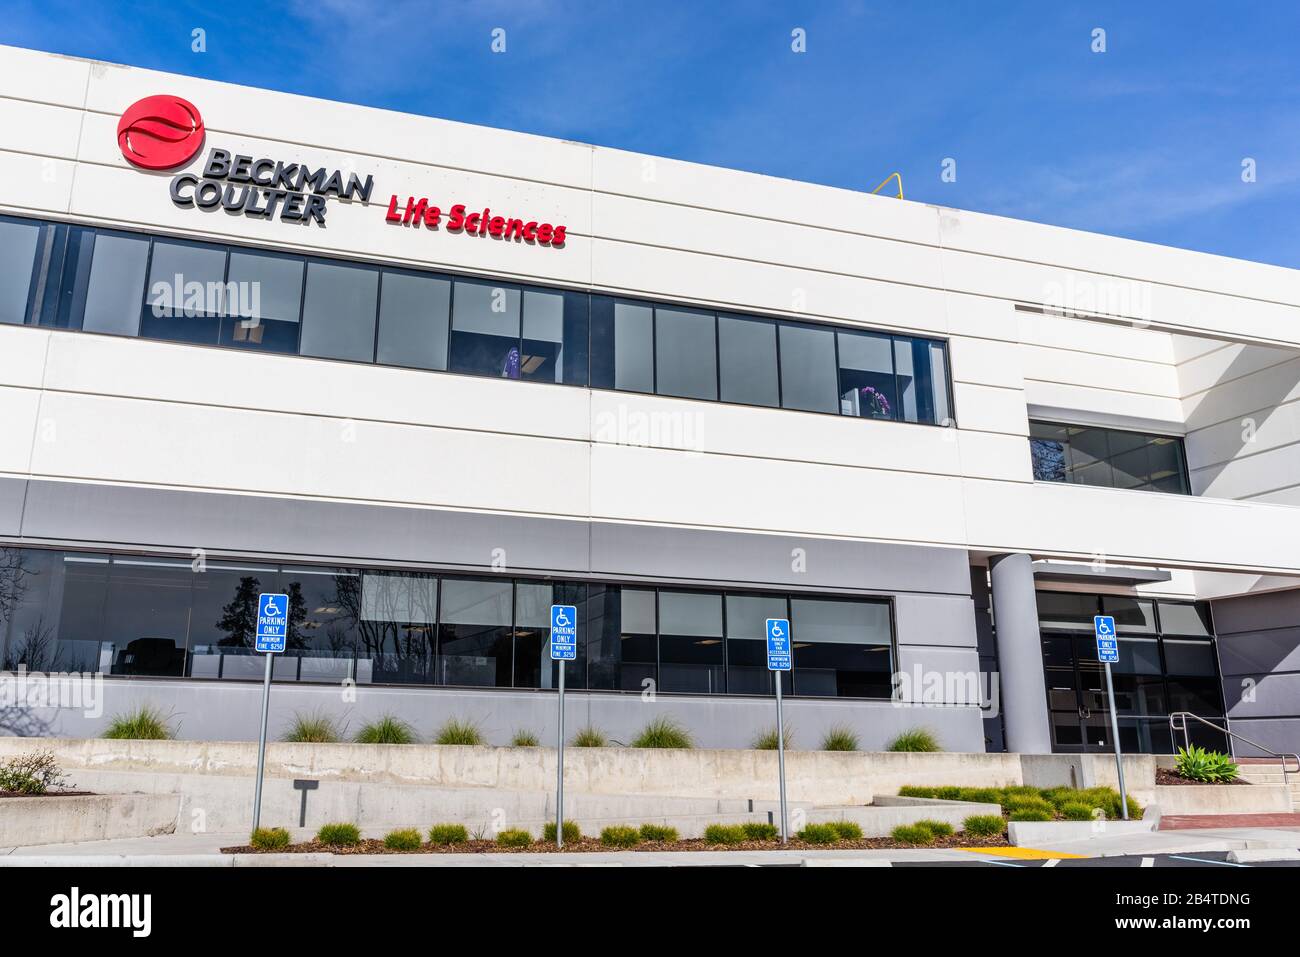 27 febbraio 2020 San Jose / CA / USA - Beckman Coulter Inc sede in Silicon Valley; Beckman Coulter sviluppa, produce e commercializza prodotti a. Foto Stock